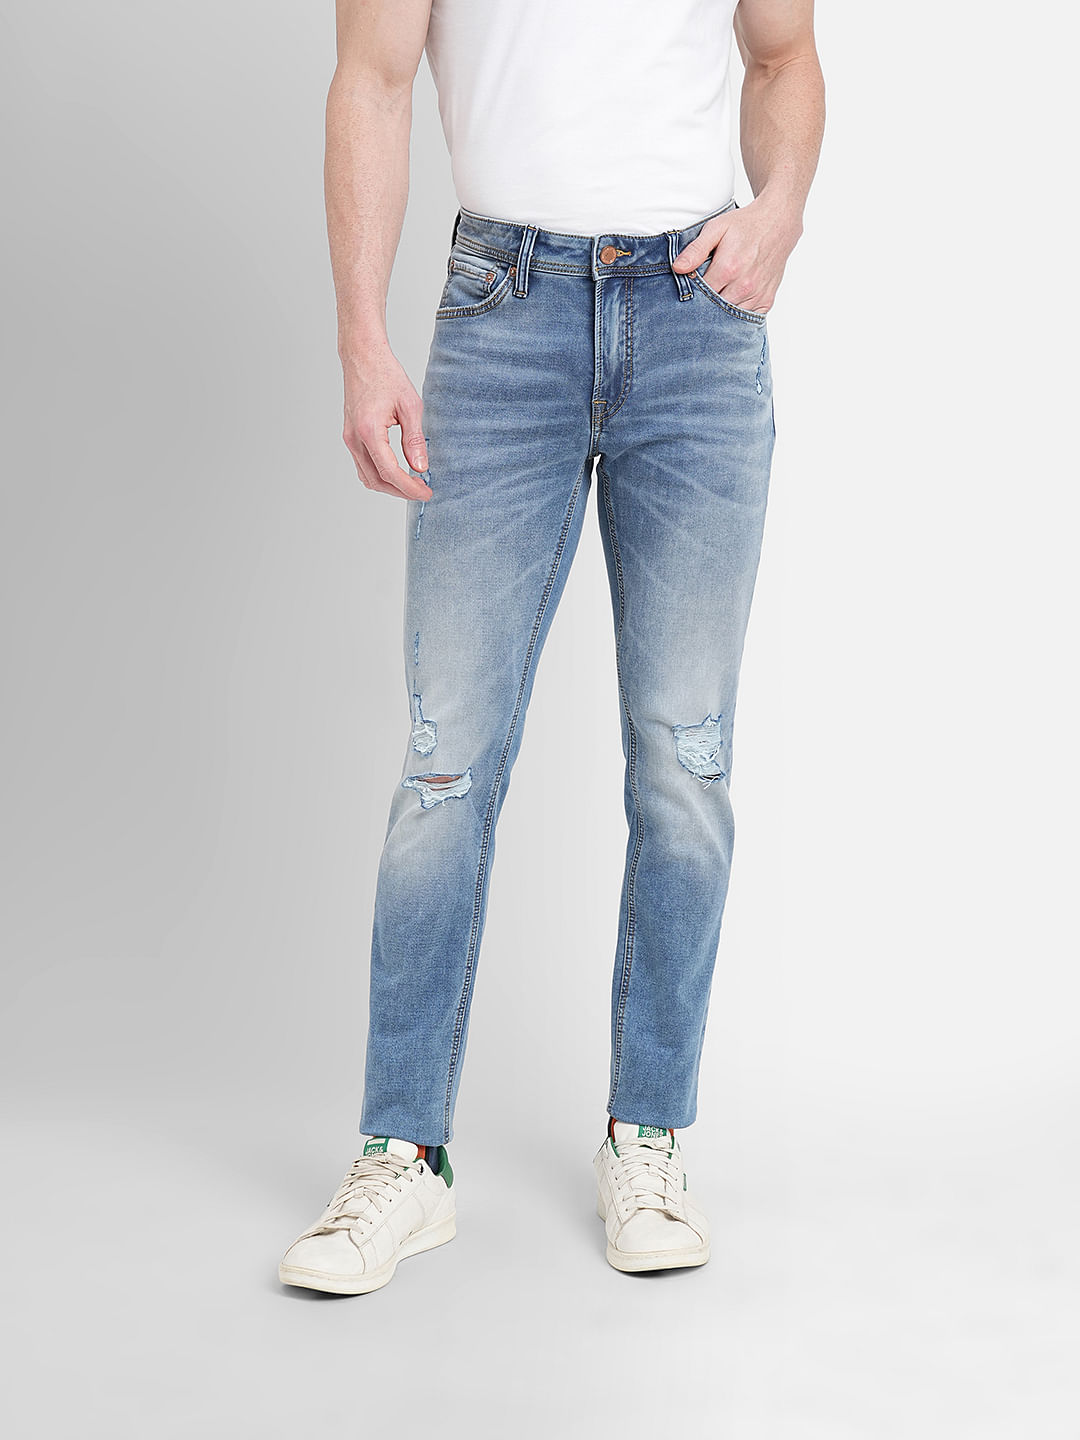 Buy Trendy Gentain Blue Skinny Fit Jeans Mens – Badmaash